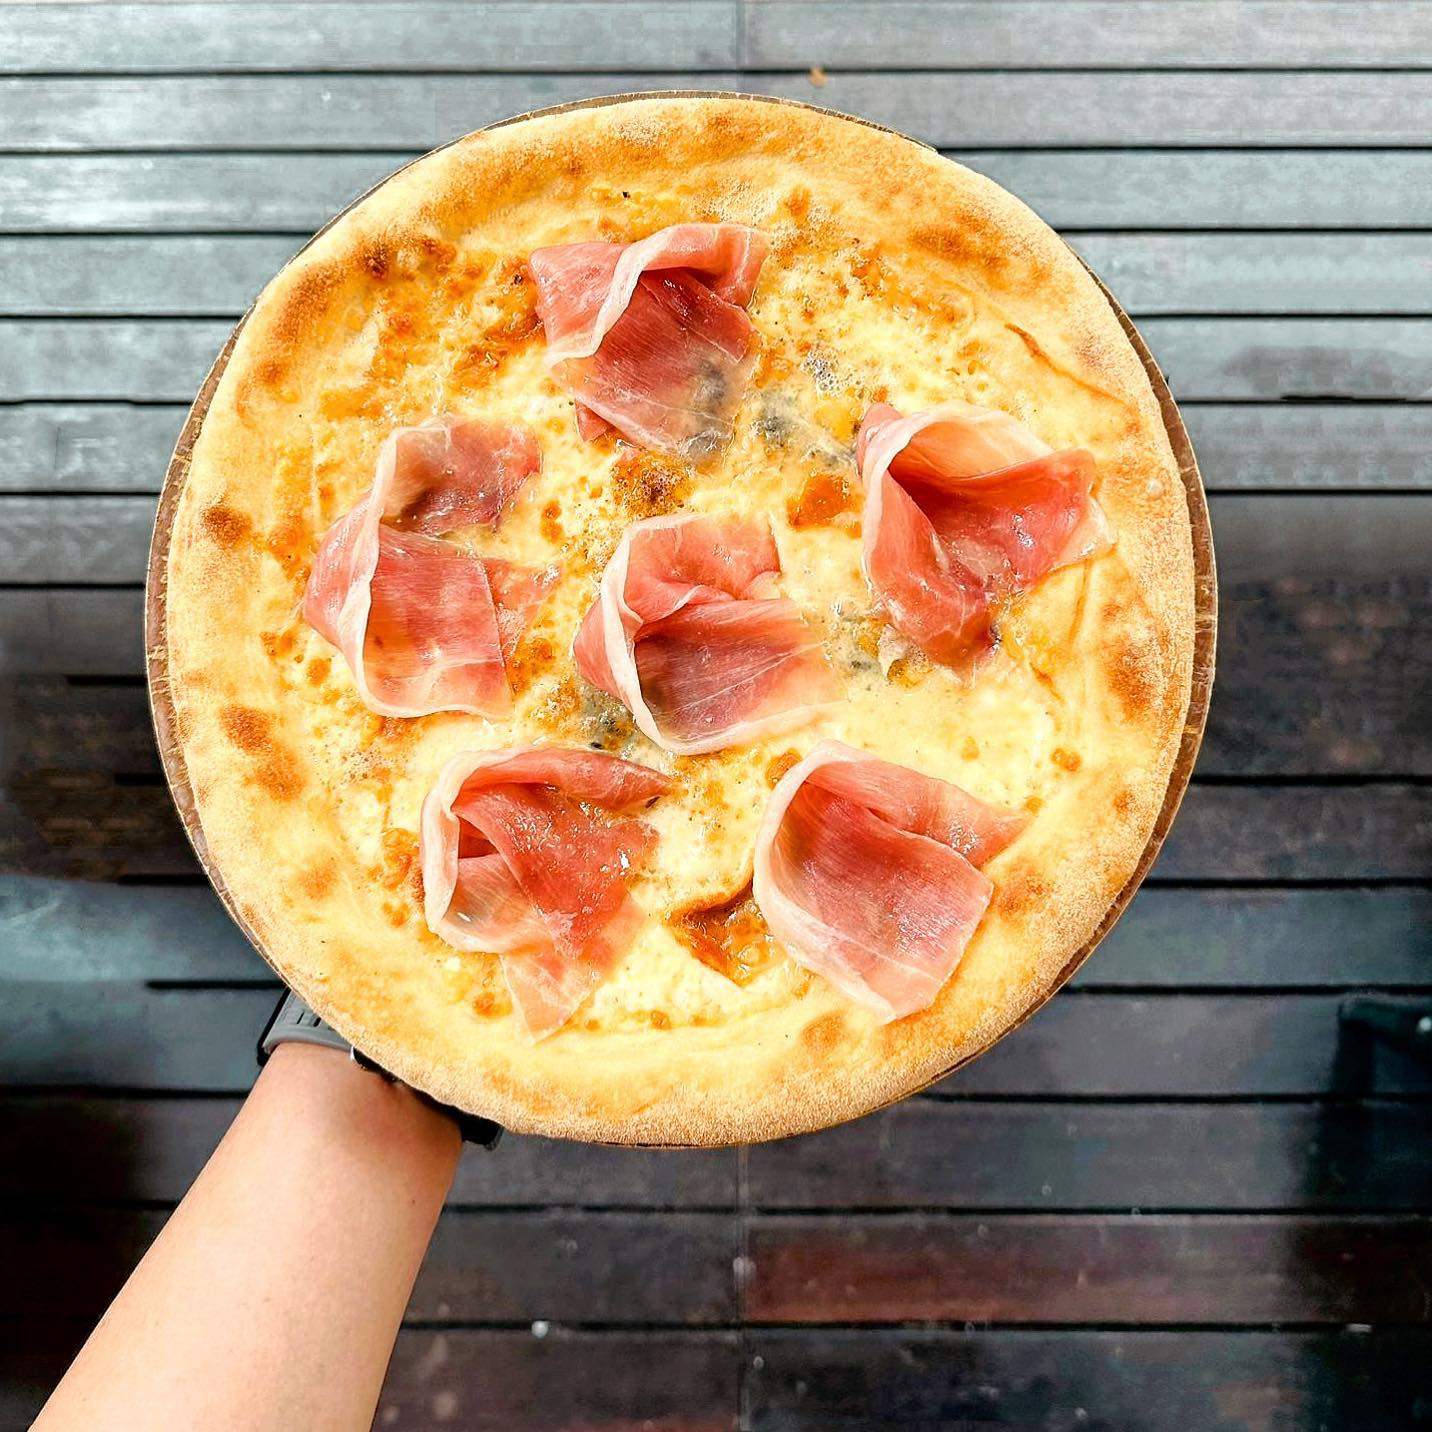 La Camionetta’s five cheese pizza with serrano ham. Photo: Instagram/@lacamionettapizza